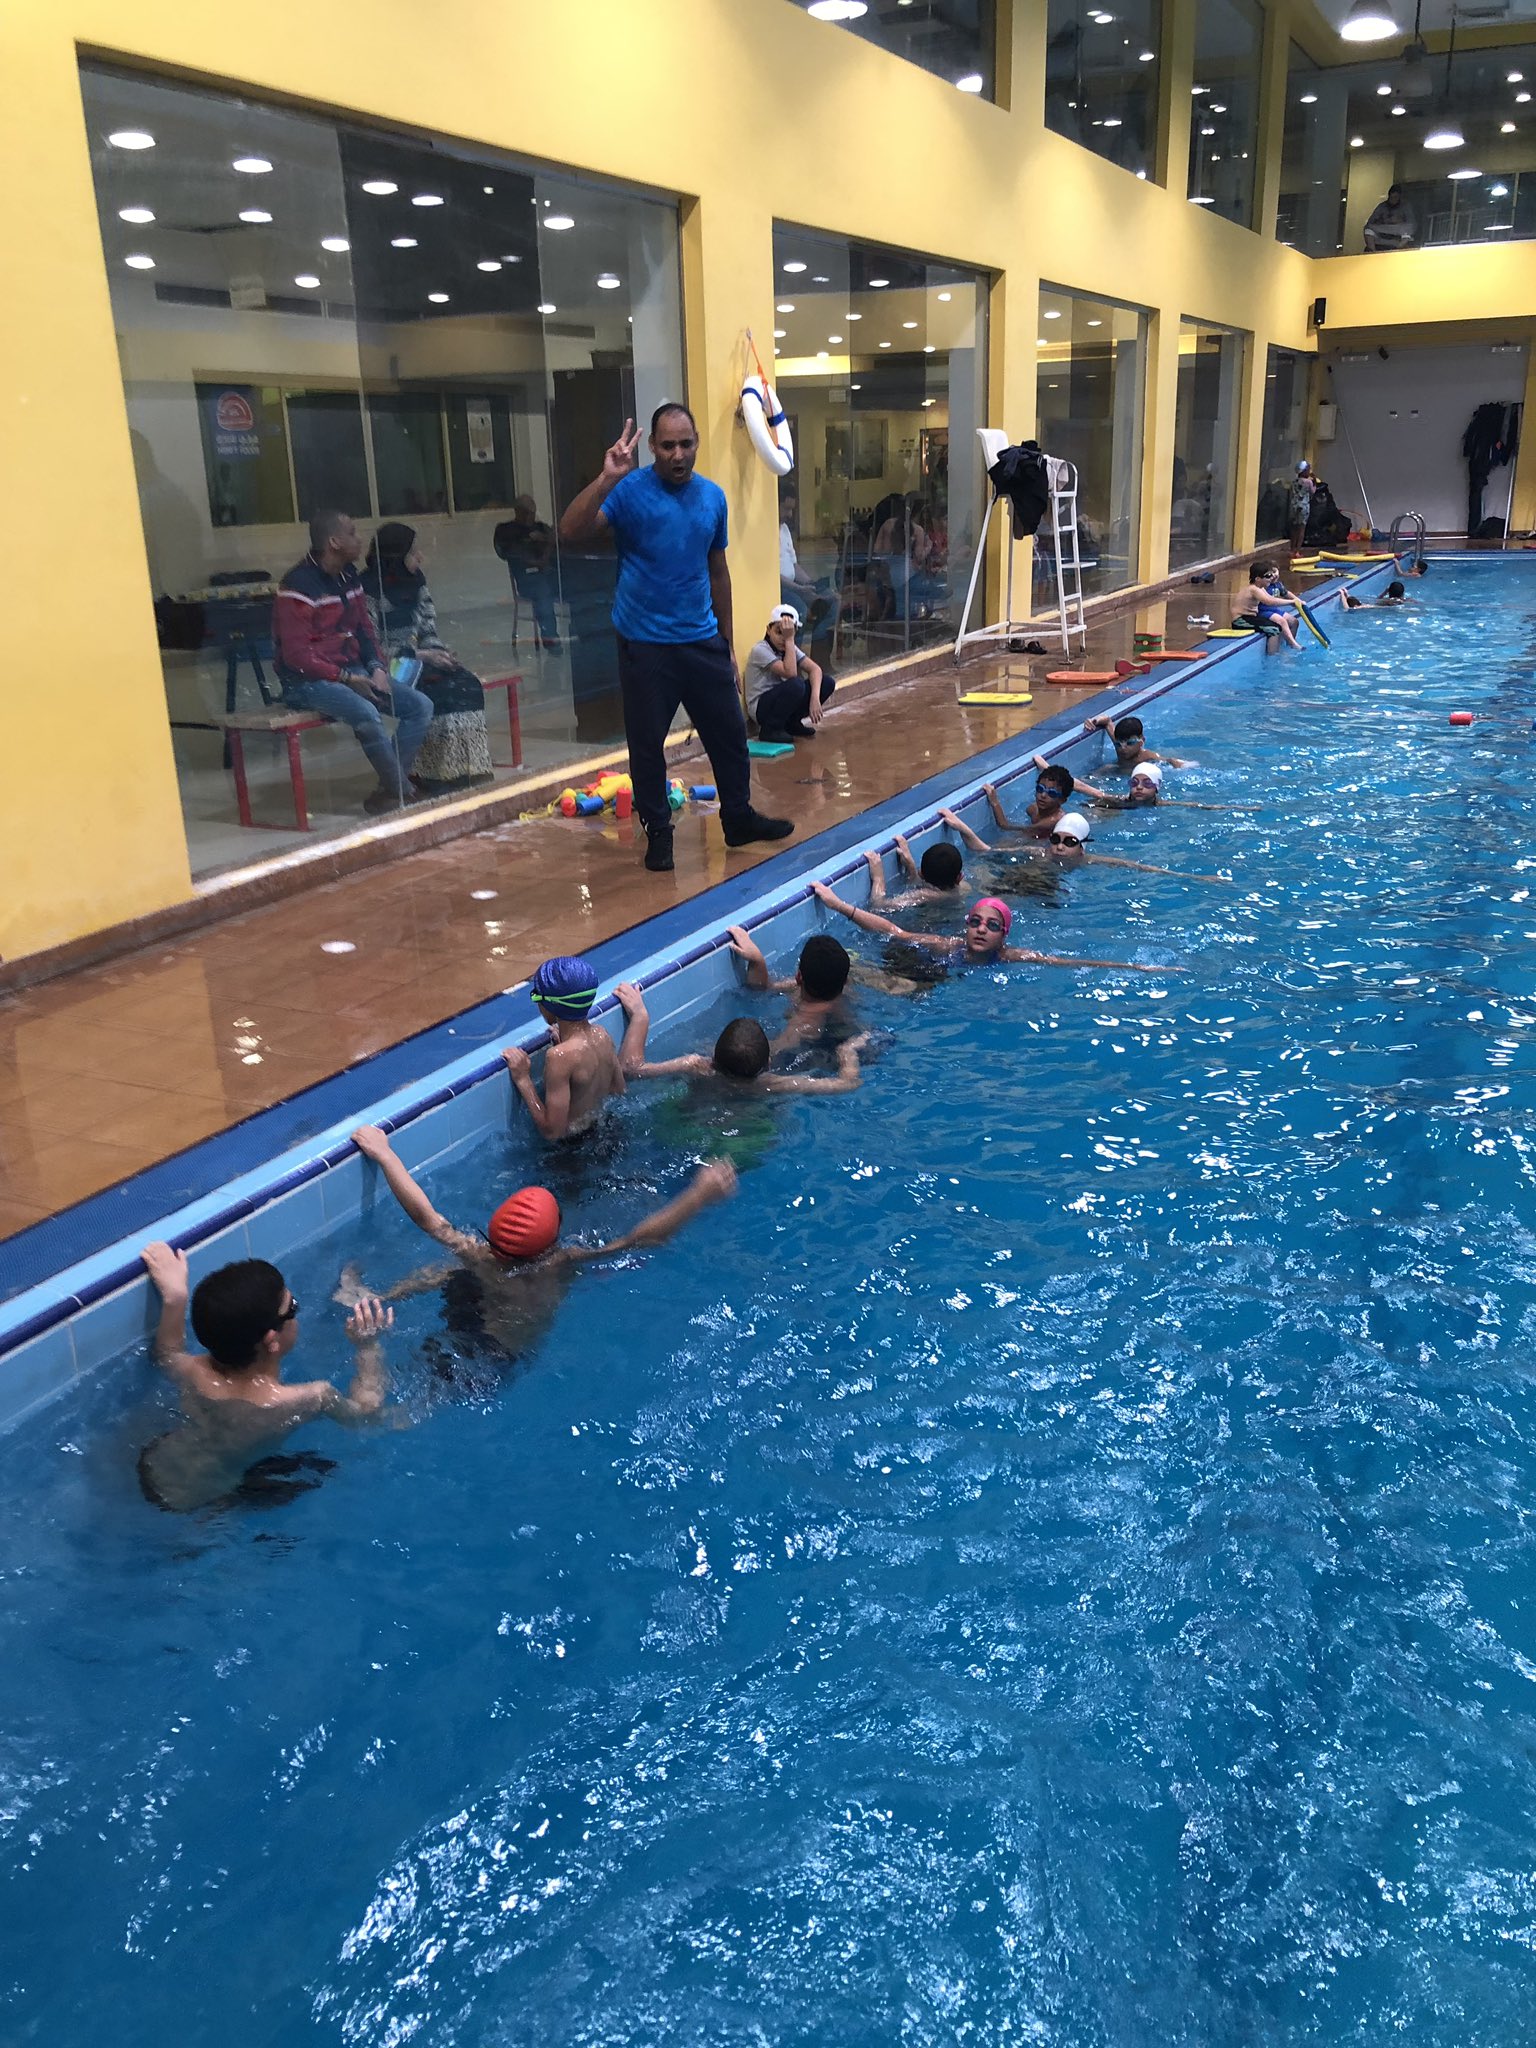 تعليم السباحة للاطفال في الرياض